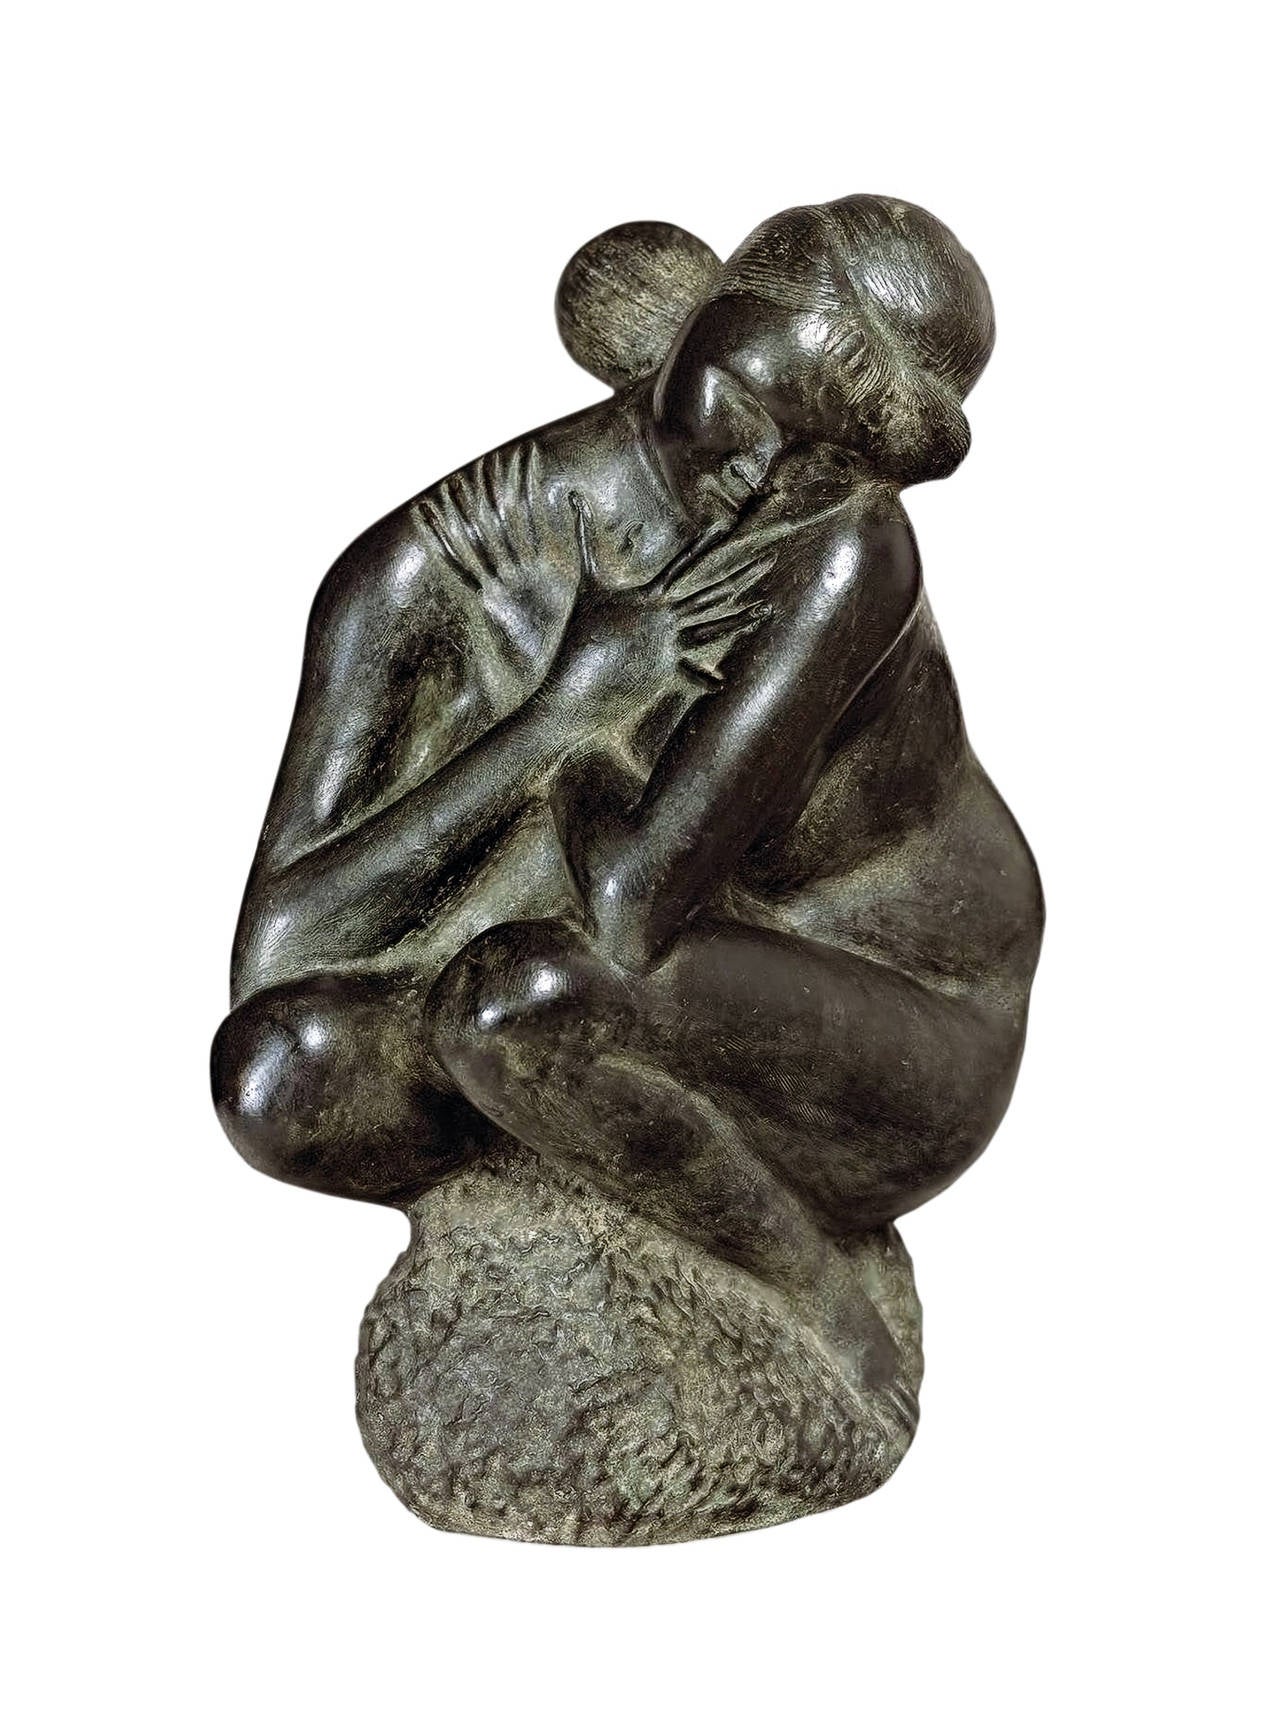 Emilio Greco Nude Sculpture - Squatting figure